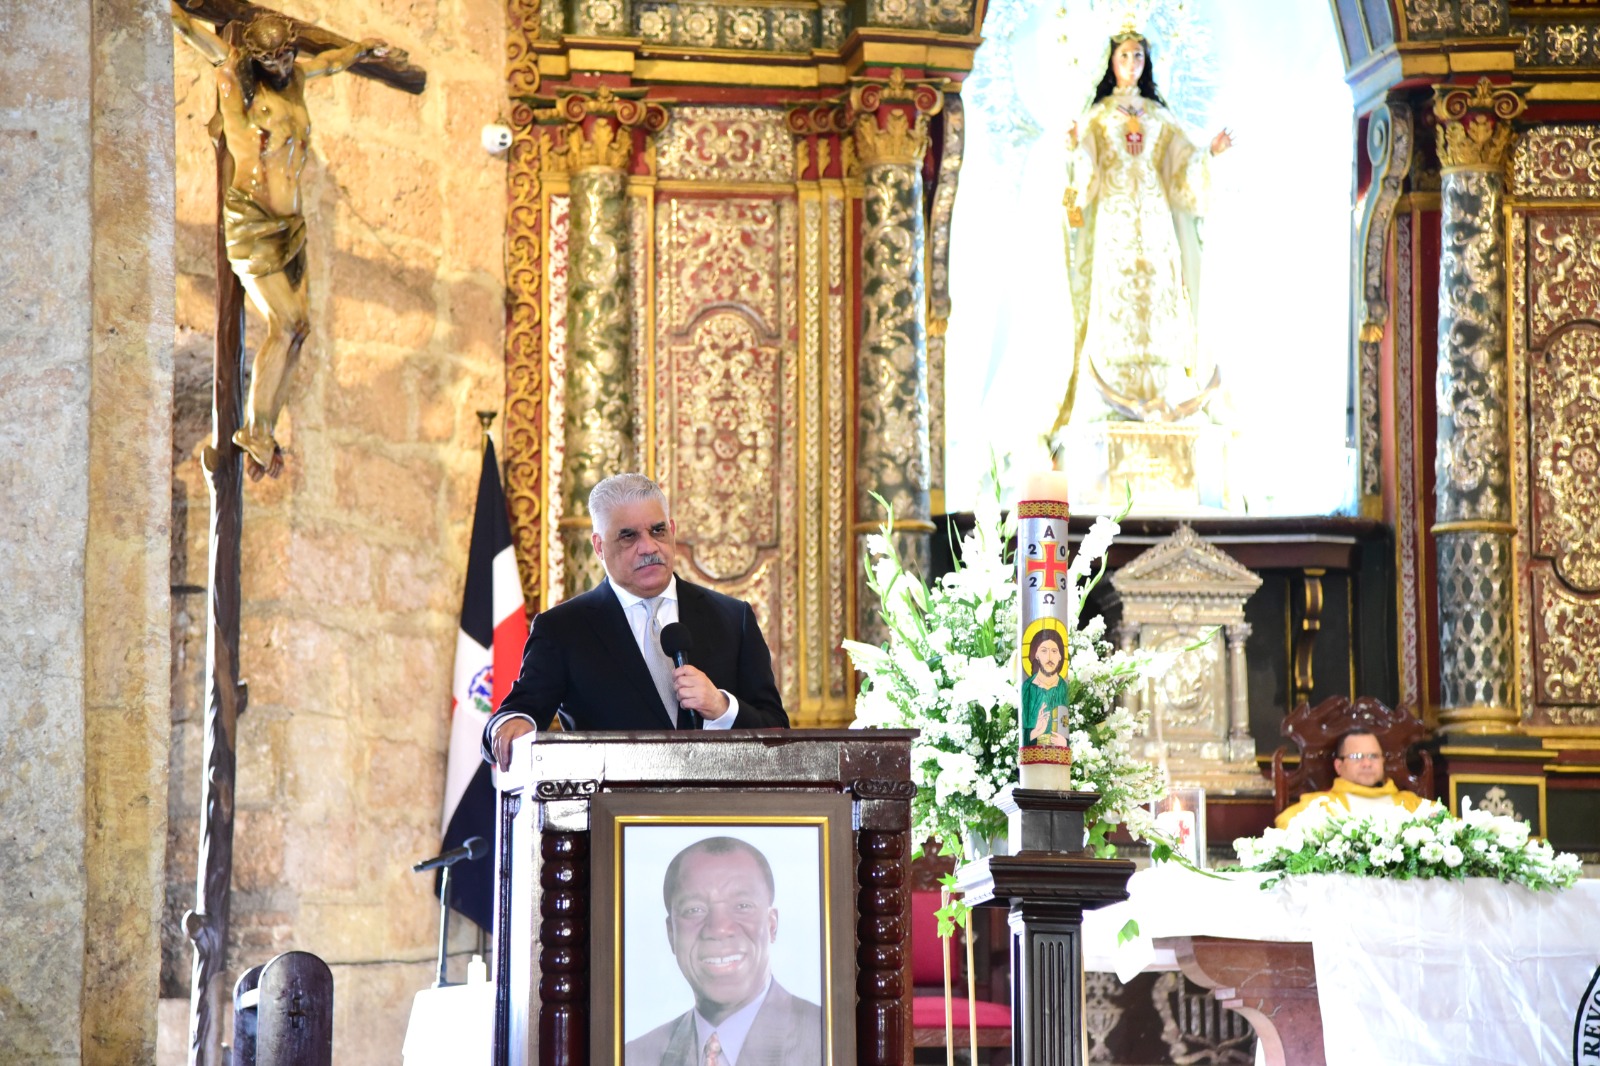 Miguel Vargas recuerda a Peña Gómez en sus diferentes manifestaciones y su legado de principios y valores